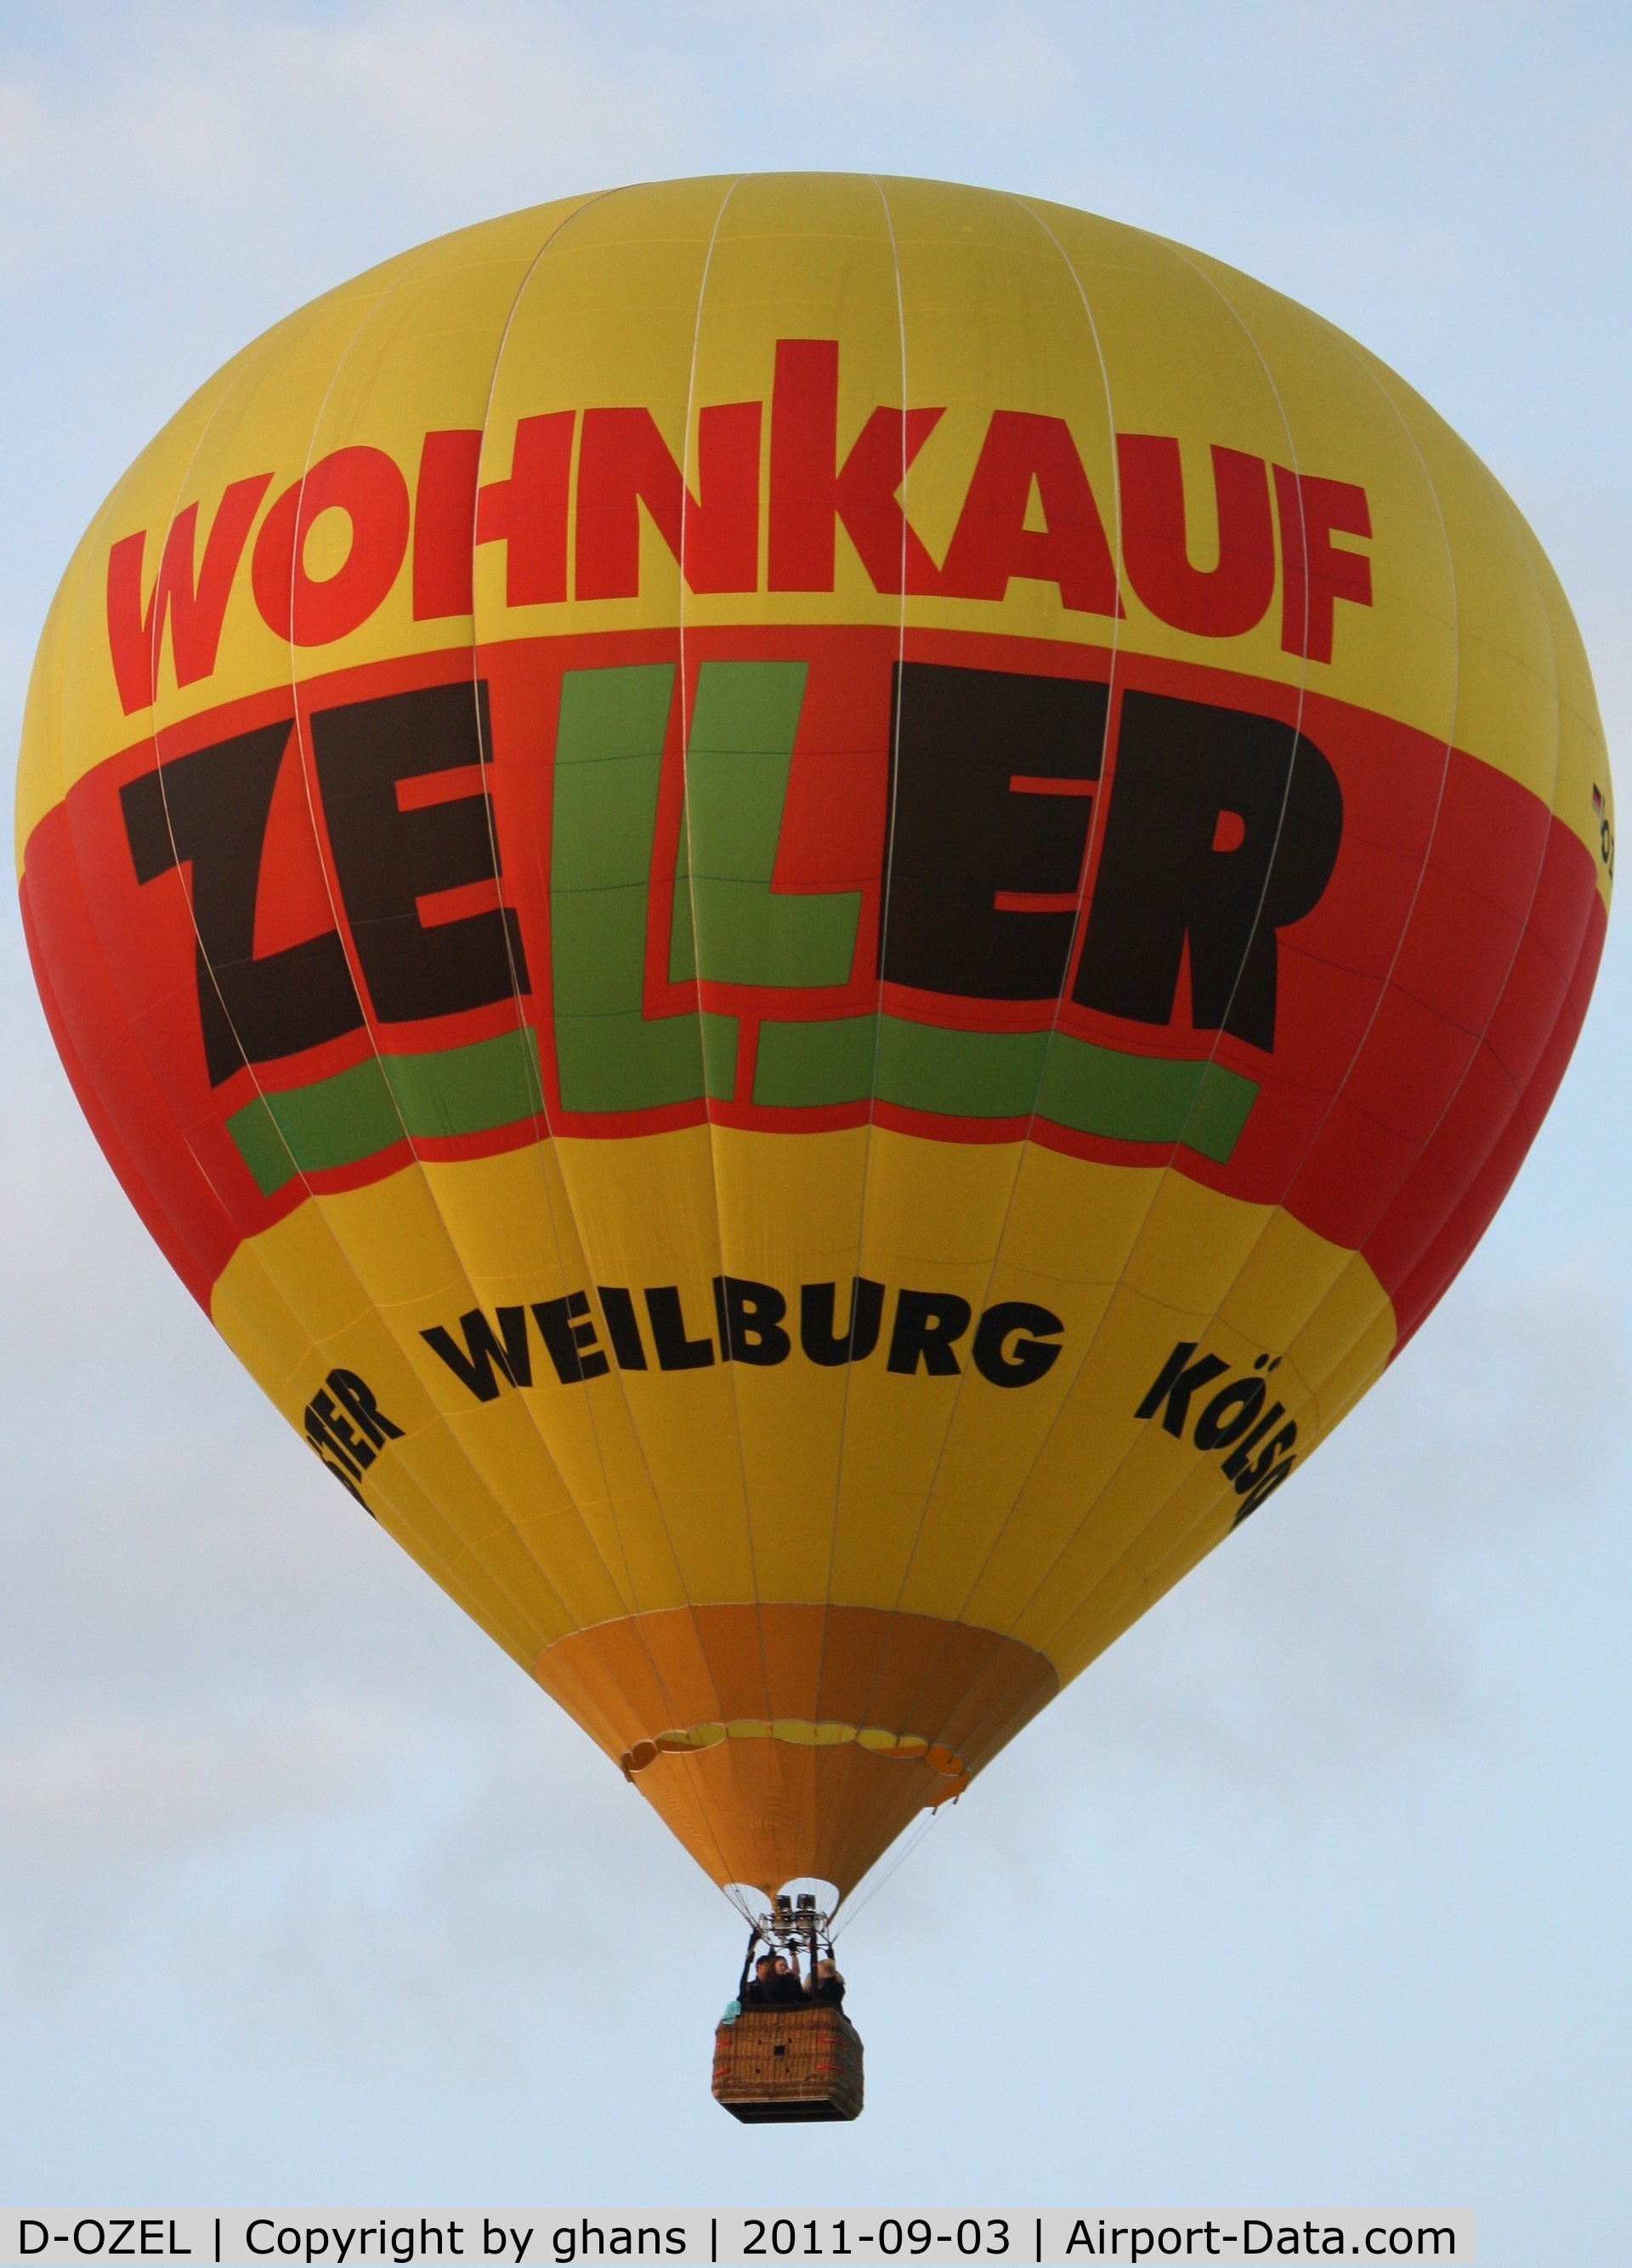 D-OZEL, 2002 Schroeder Fire Balloons G.34/24 C/N 1012, WIM 2011
'Wohnkauf Zeller'